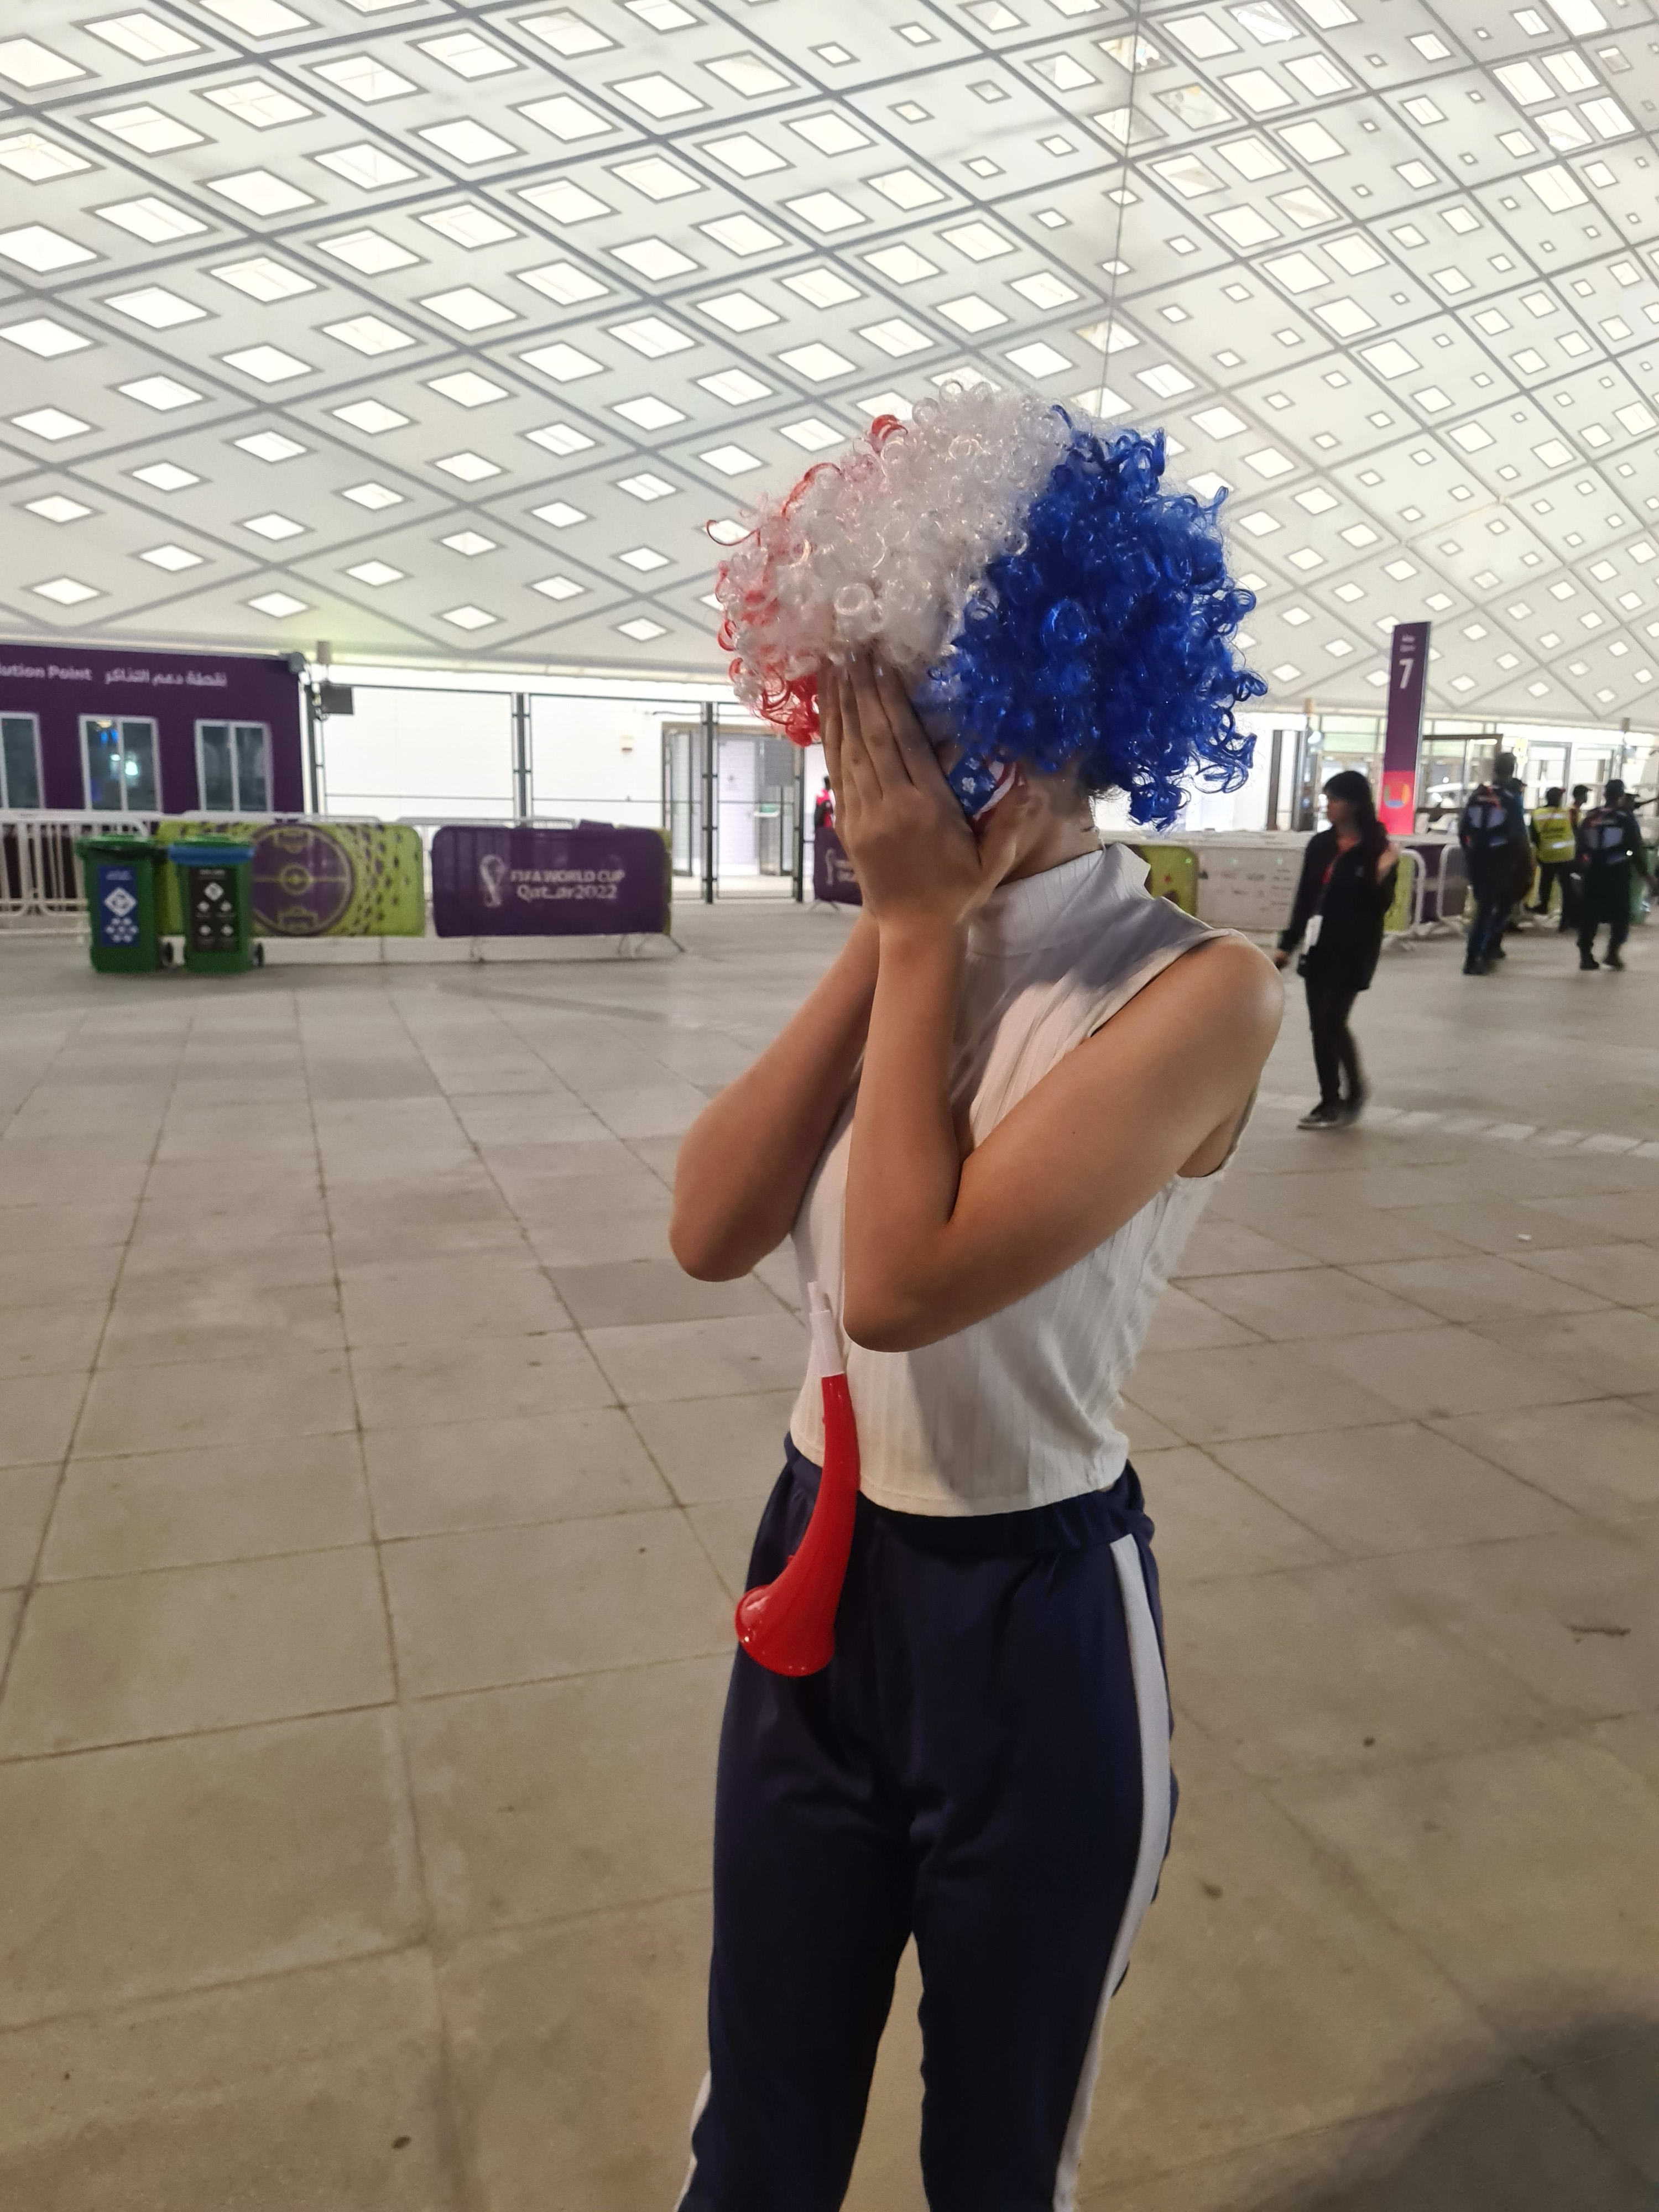 איילין, נערה אירנית, מעודדת את נבחרת ארה"ב במונדיאל קטאר 2022